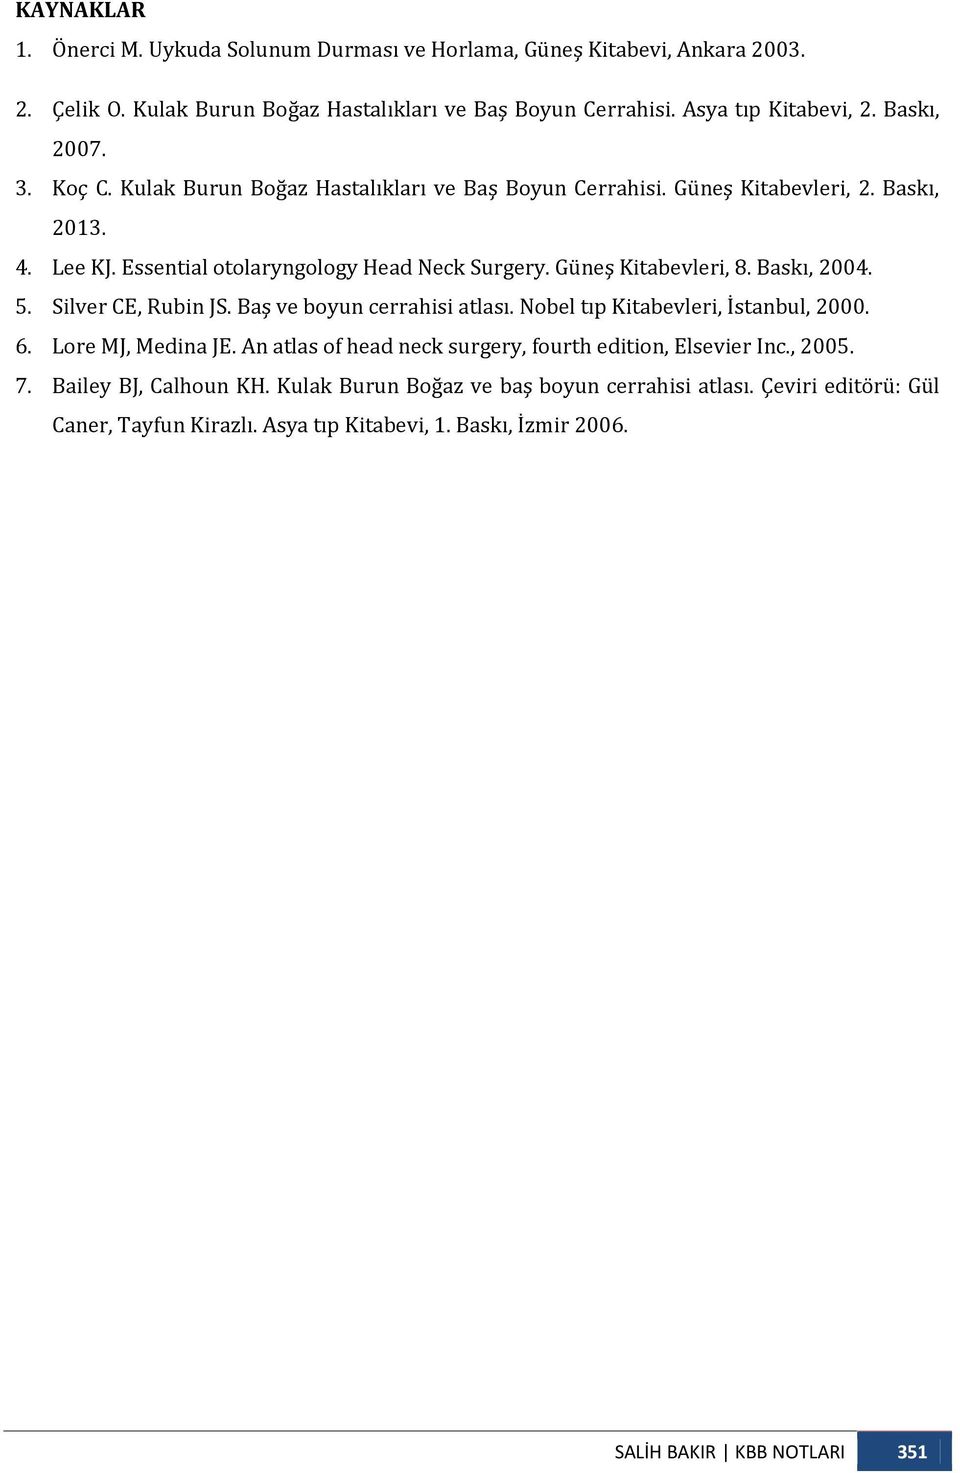 Güneş Kitabevleri, 8. Baskı, 2004. 5. Silver CE, Rubin JS. Baş ve boyun cerrahisi atlası. Nobel tıp Kitabevleri, İstanbul, 2000. 6. Lore MJ, Medina JE.